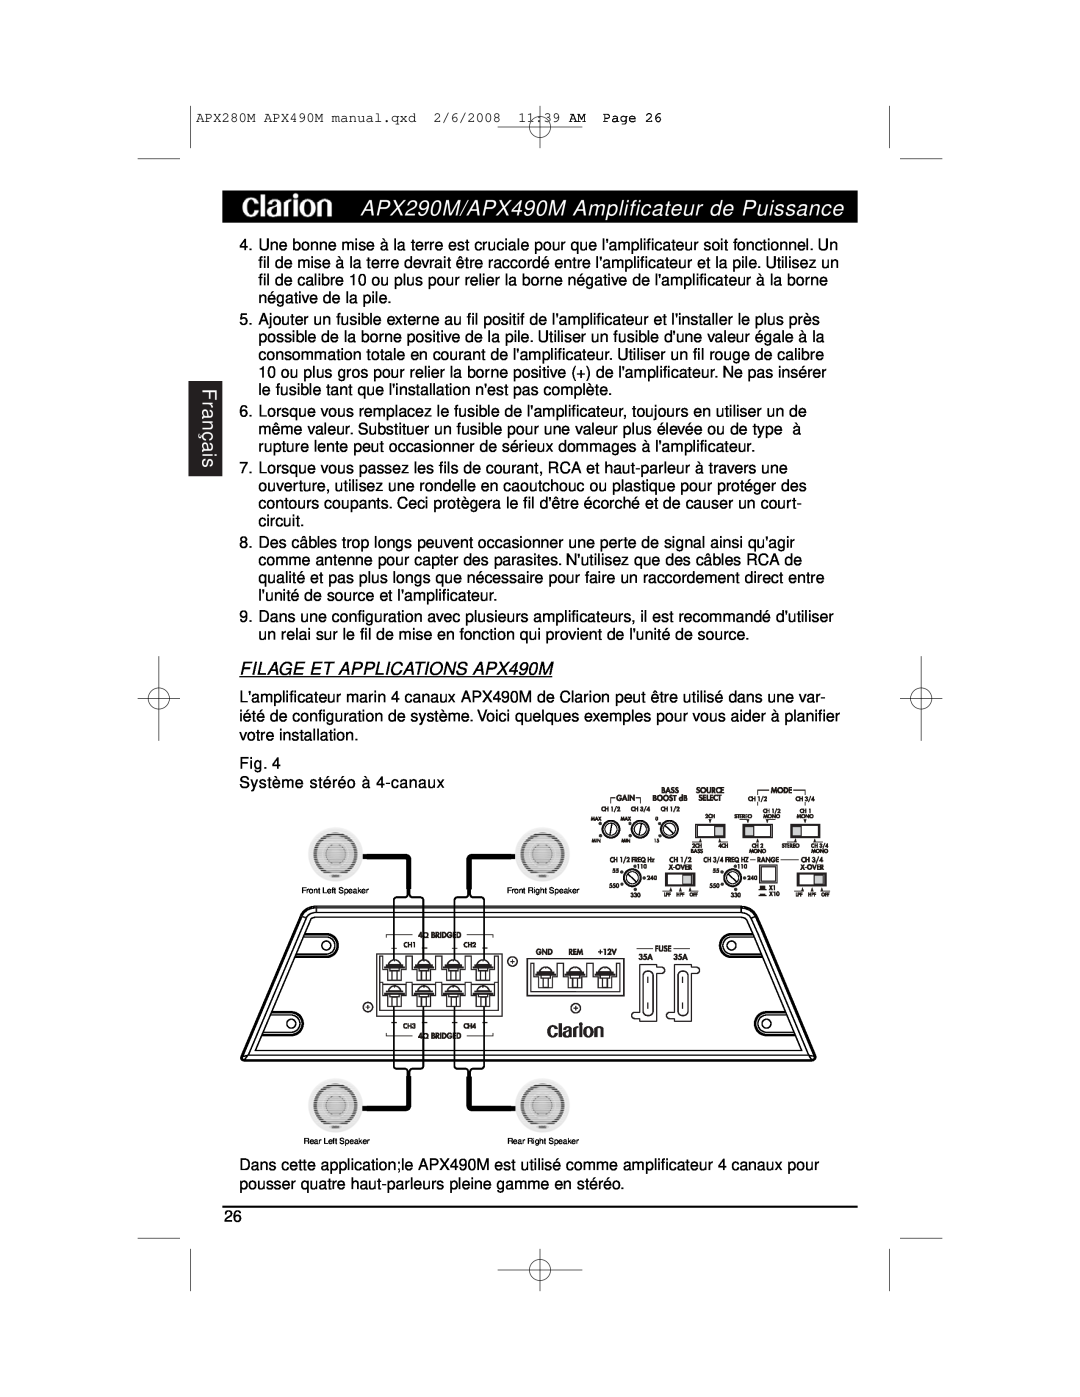 Clarion installation manual FILAGE ET APPLICATIONS APX490M, APX290M/APX490M Amplificateur de Puissance, Français 